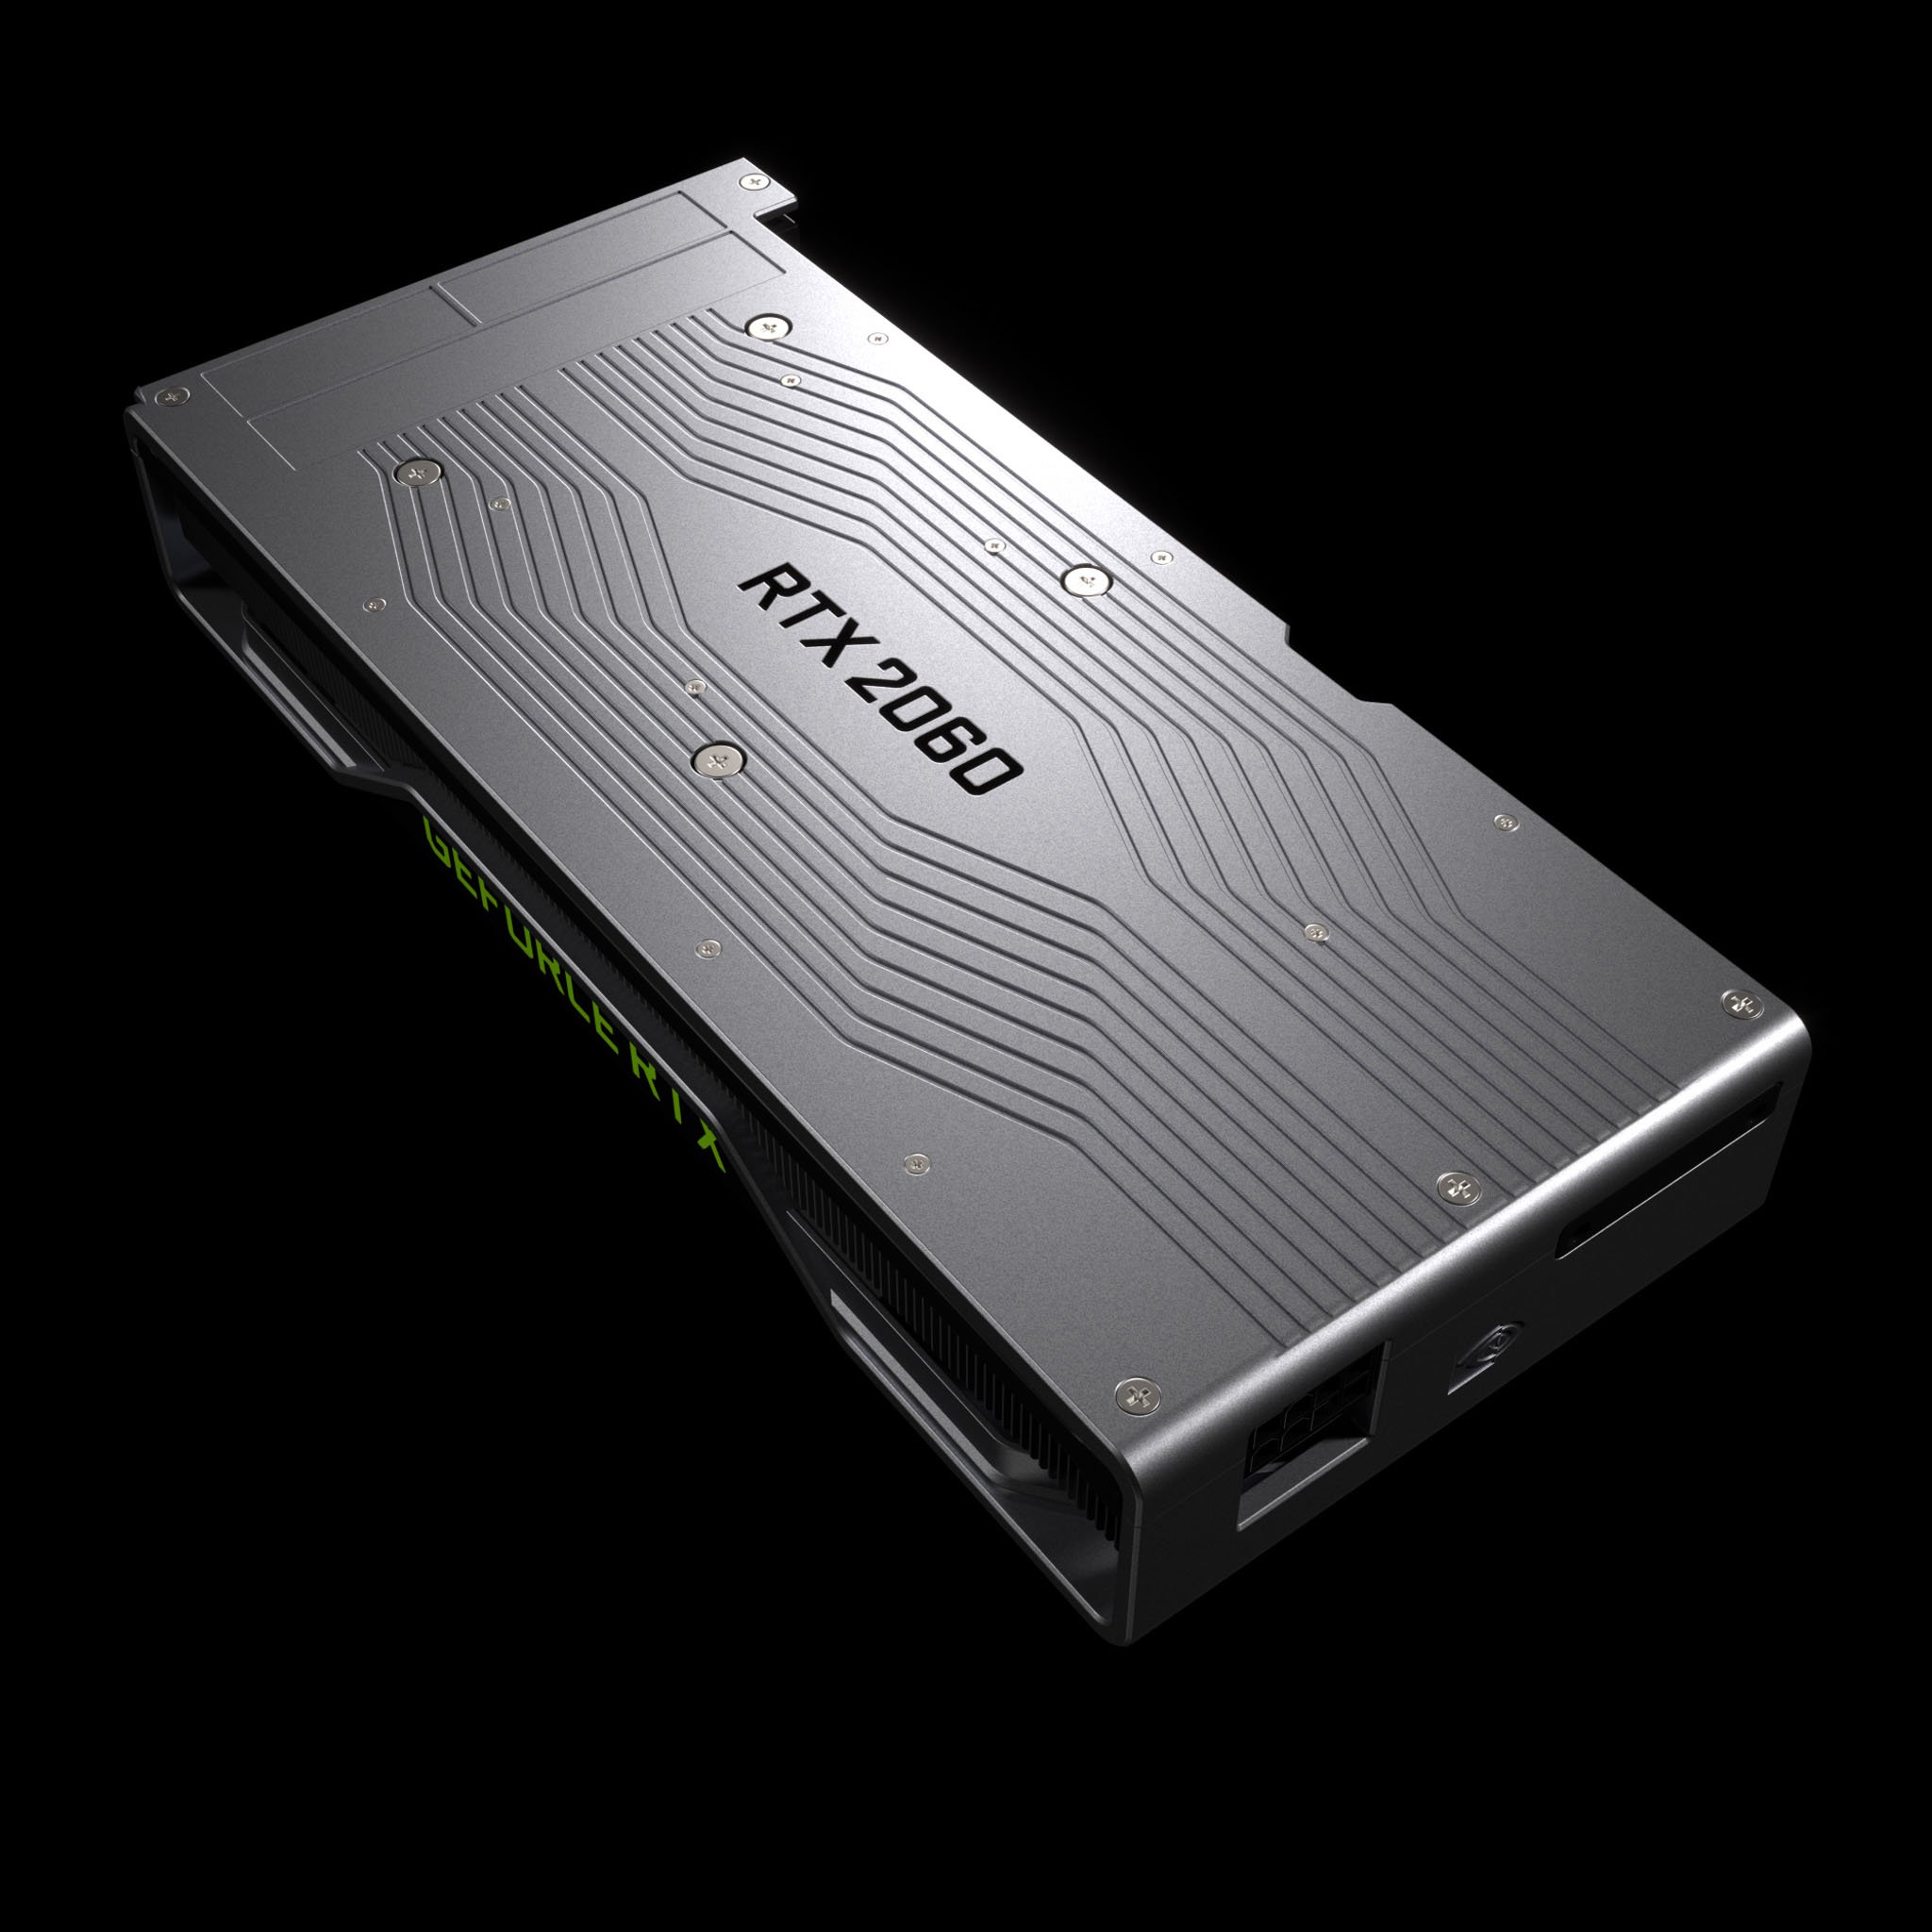 GeForce RTX 2060 chính thức, mạnh hơn GTX 1070Ti 60% giá $349